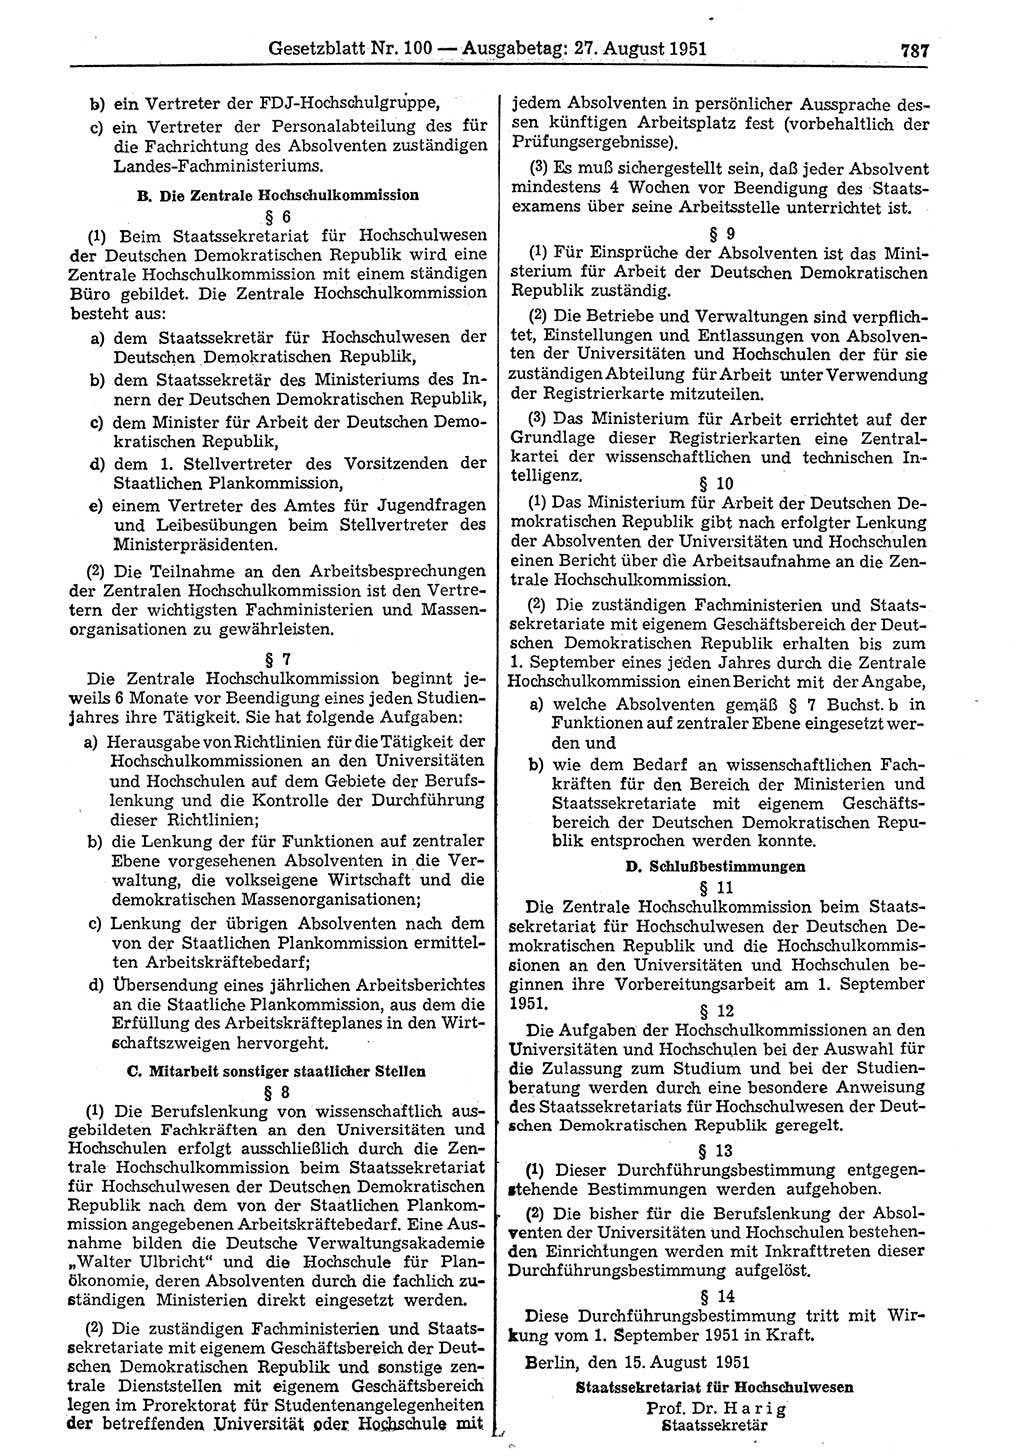 Gesetzblatt (GBl.) der Deutschen Demokratischen Republik (DDR) 1951, Seite 787 (GBl. DDR 1951, S. 787)